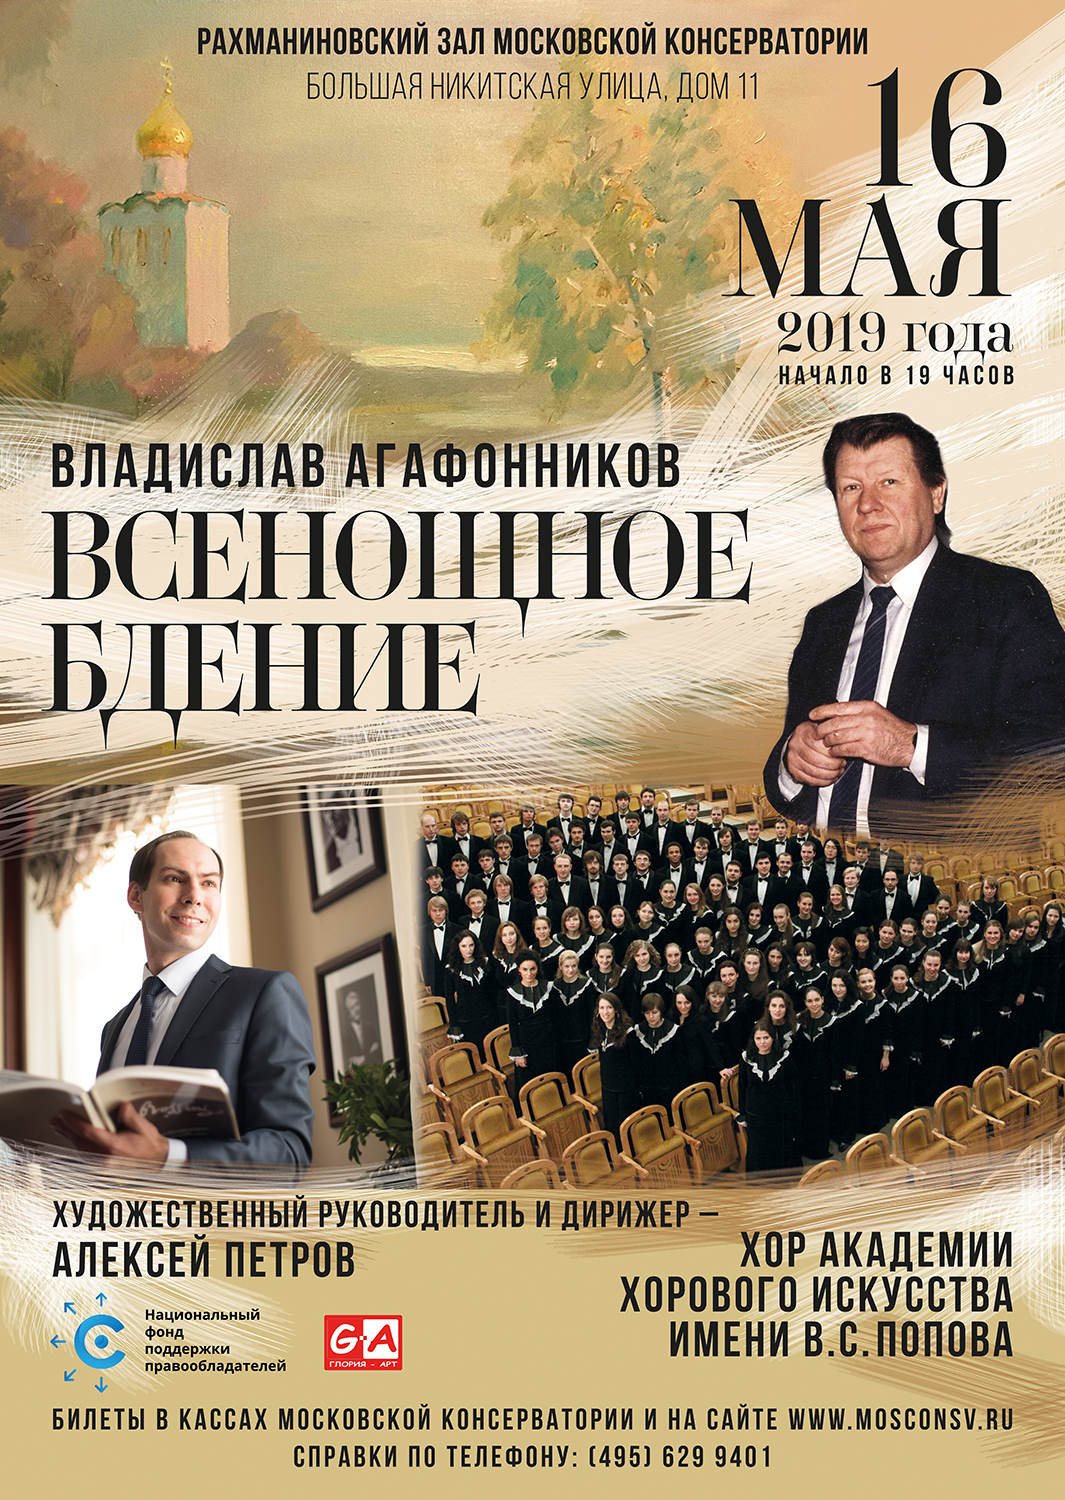 При поддержке НФПП пройдет авторский концерт композитора Владислава Агафонникова